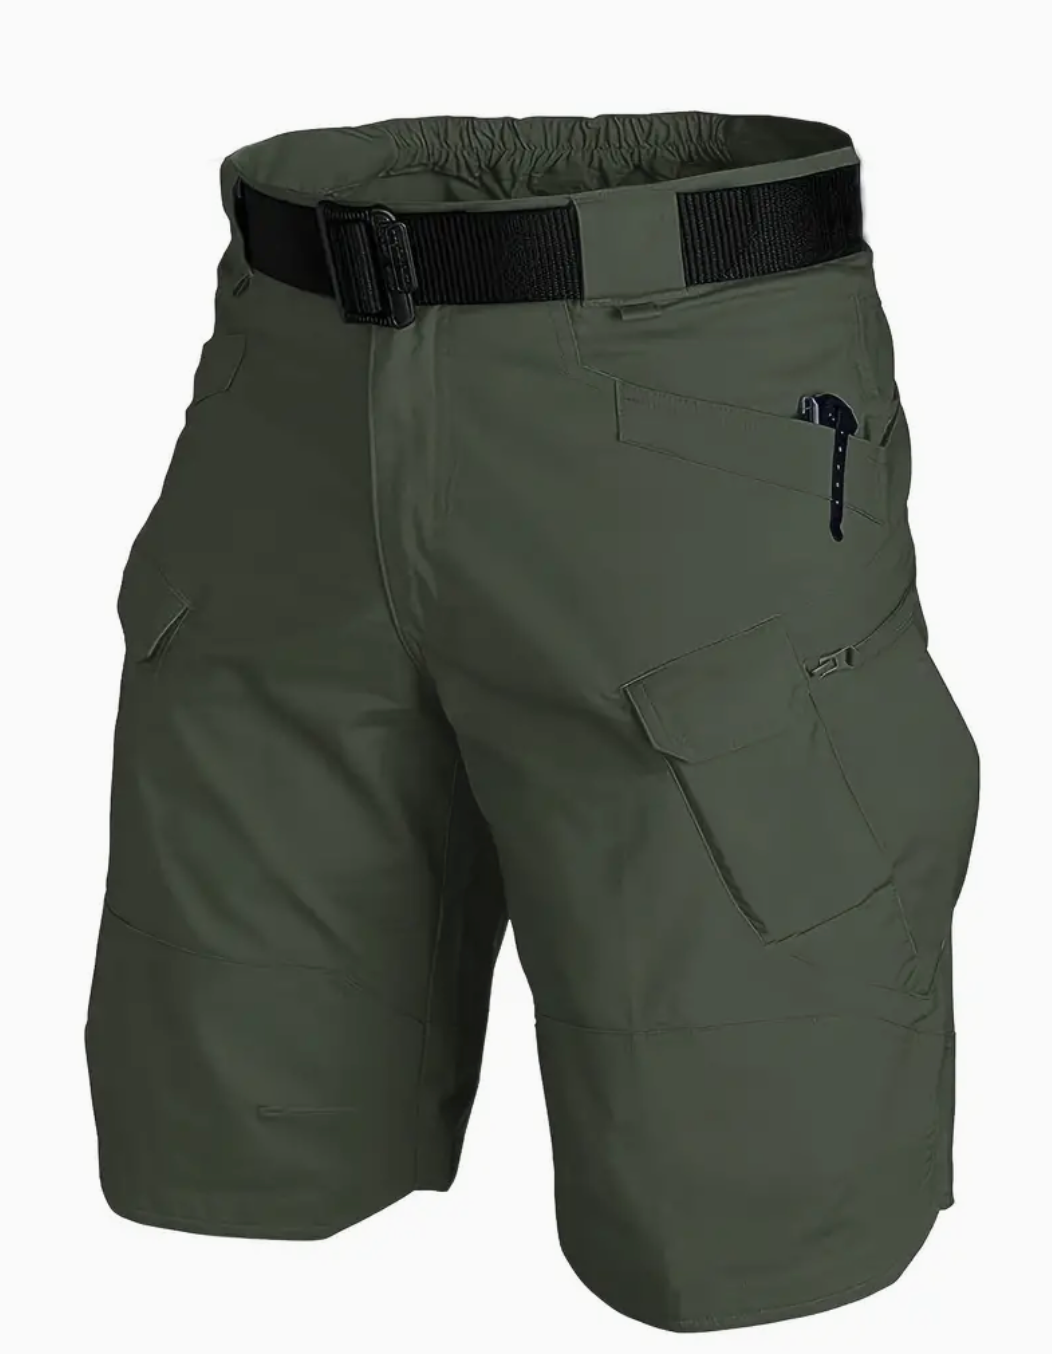 Men's Casual Tactical Shorts